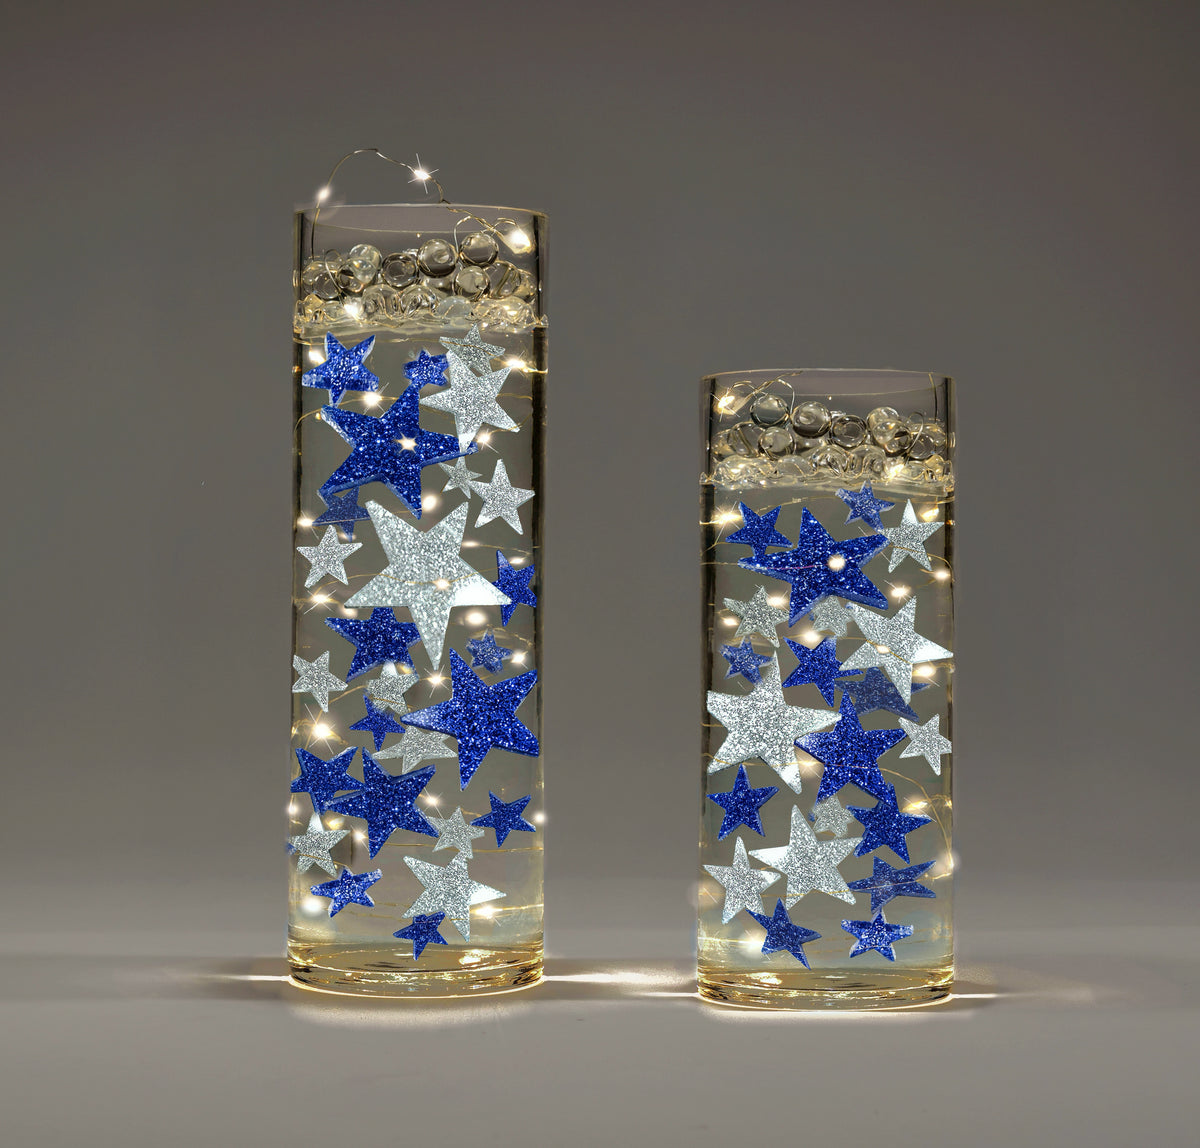 Floating Stars Glitter Blue-Rellena galones para tus jarrones-Incluye kits de geles de agua transparentes para una apariencia flotante-Opción de luces de hadas sumergibles-Impresionantes decoraciones de jarrones